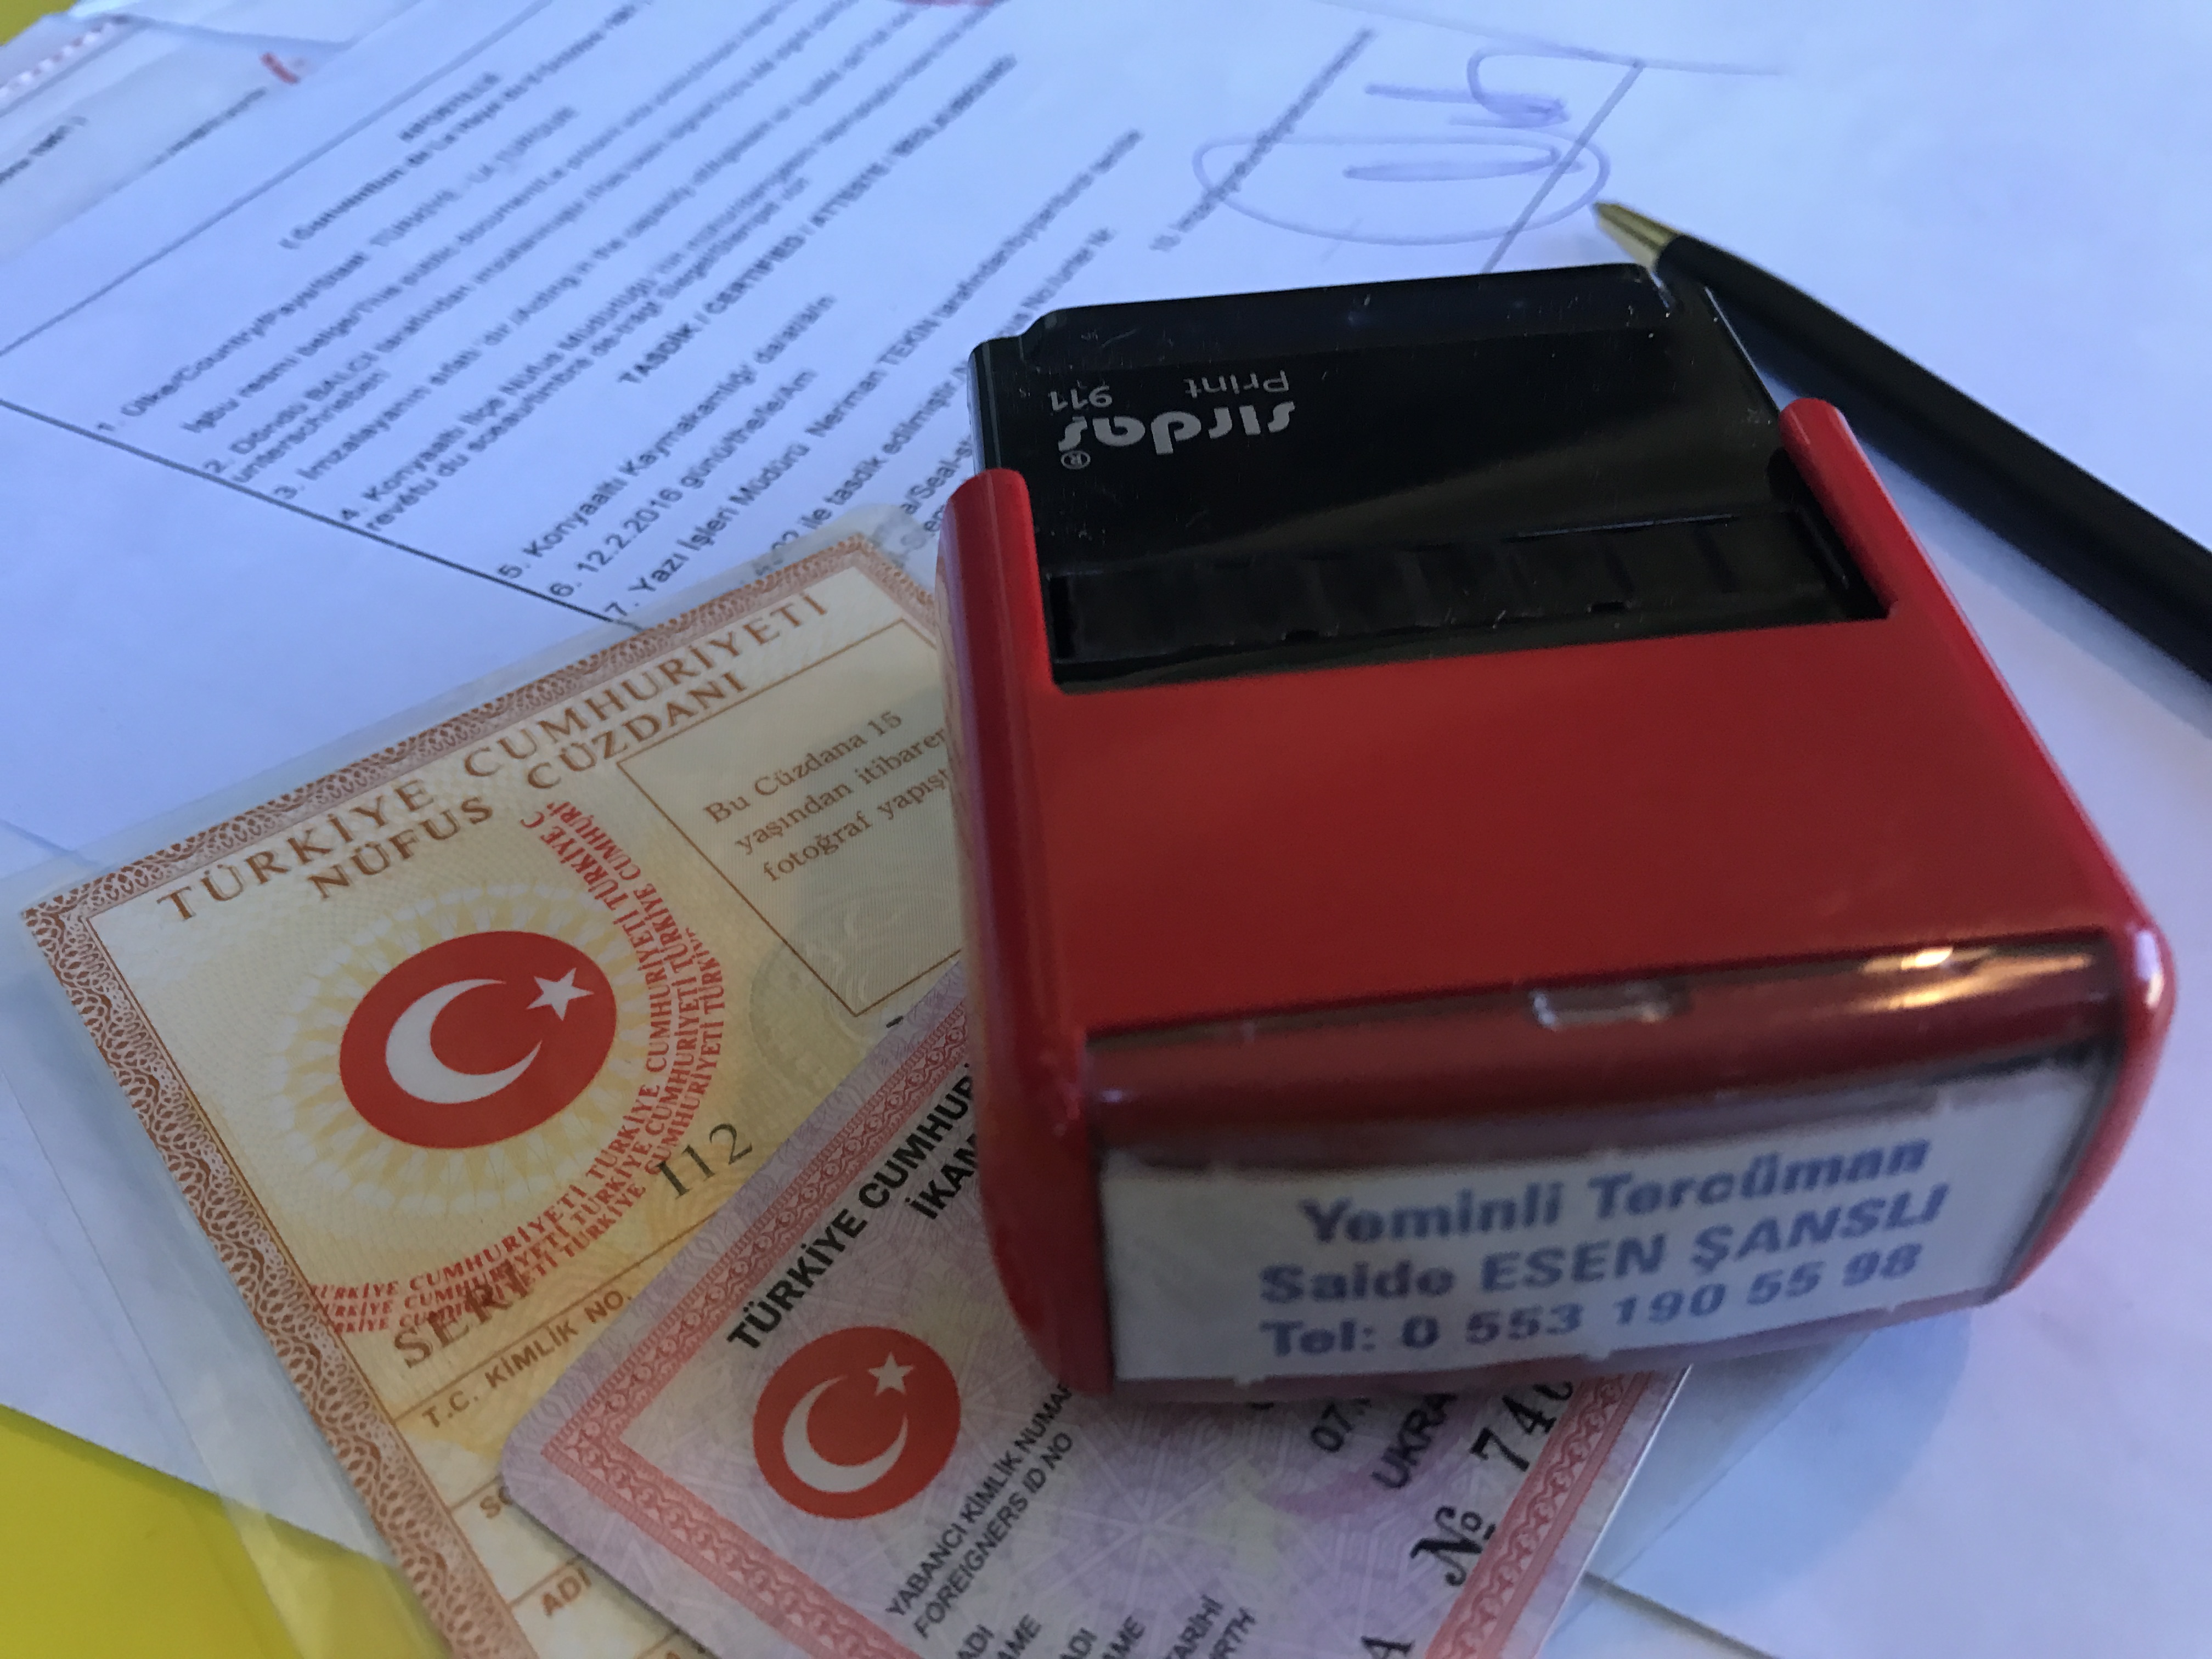 Нужно ли переоформлять турецкий вид на жительство при переезде в другой город Турции?